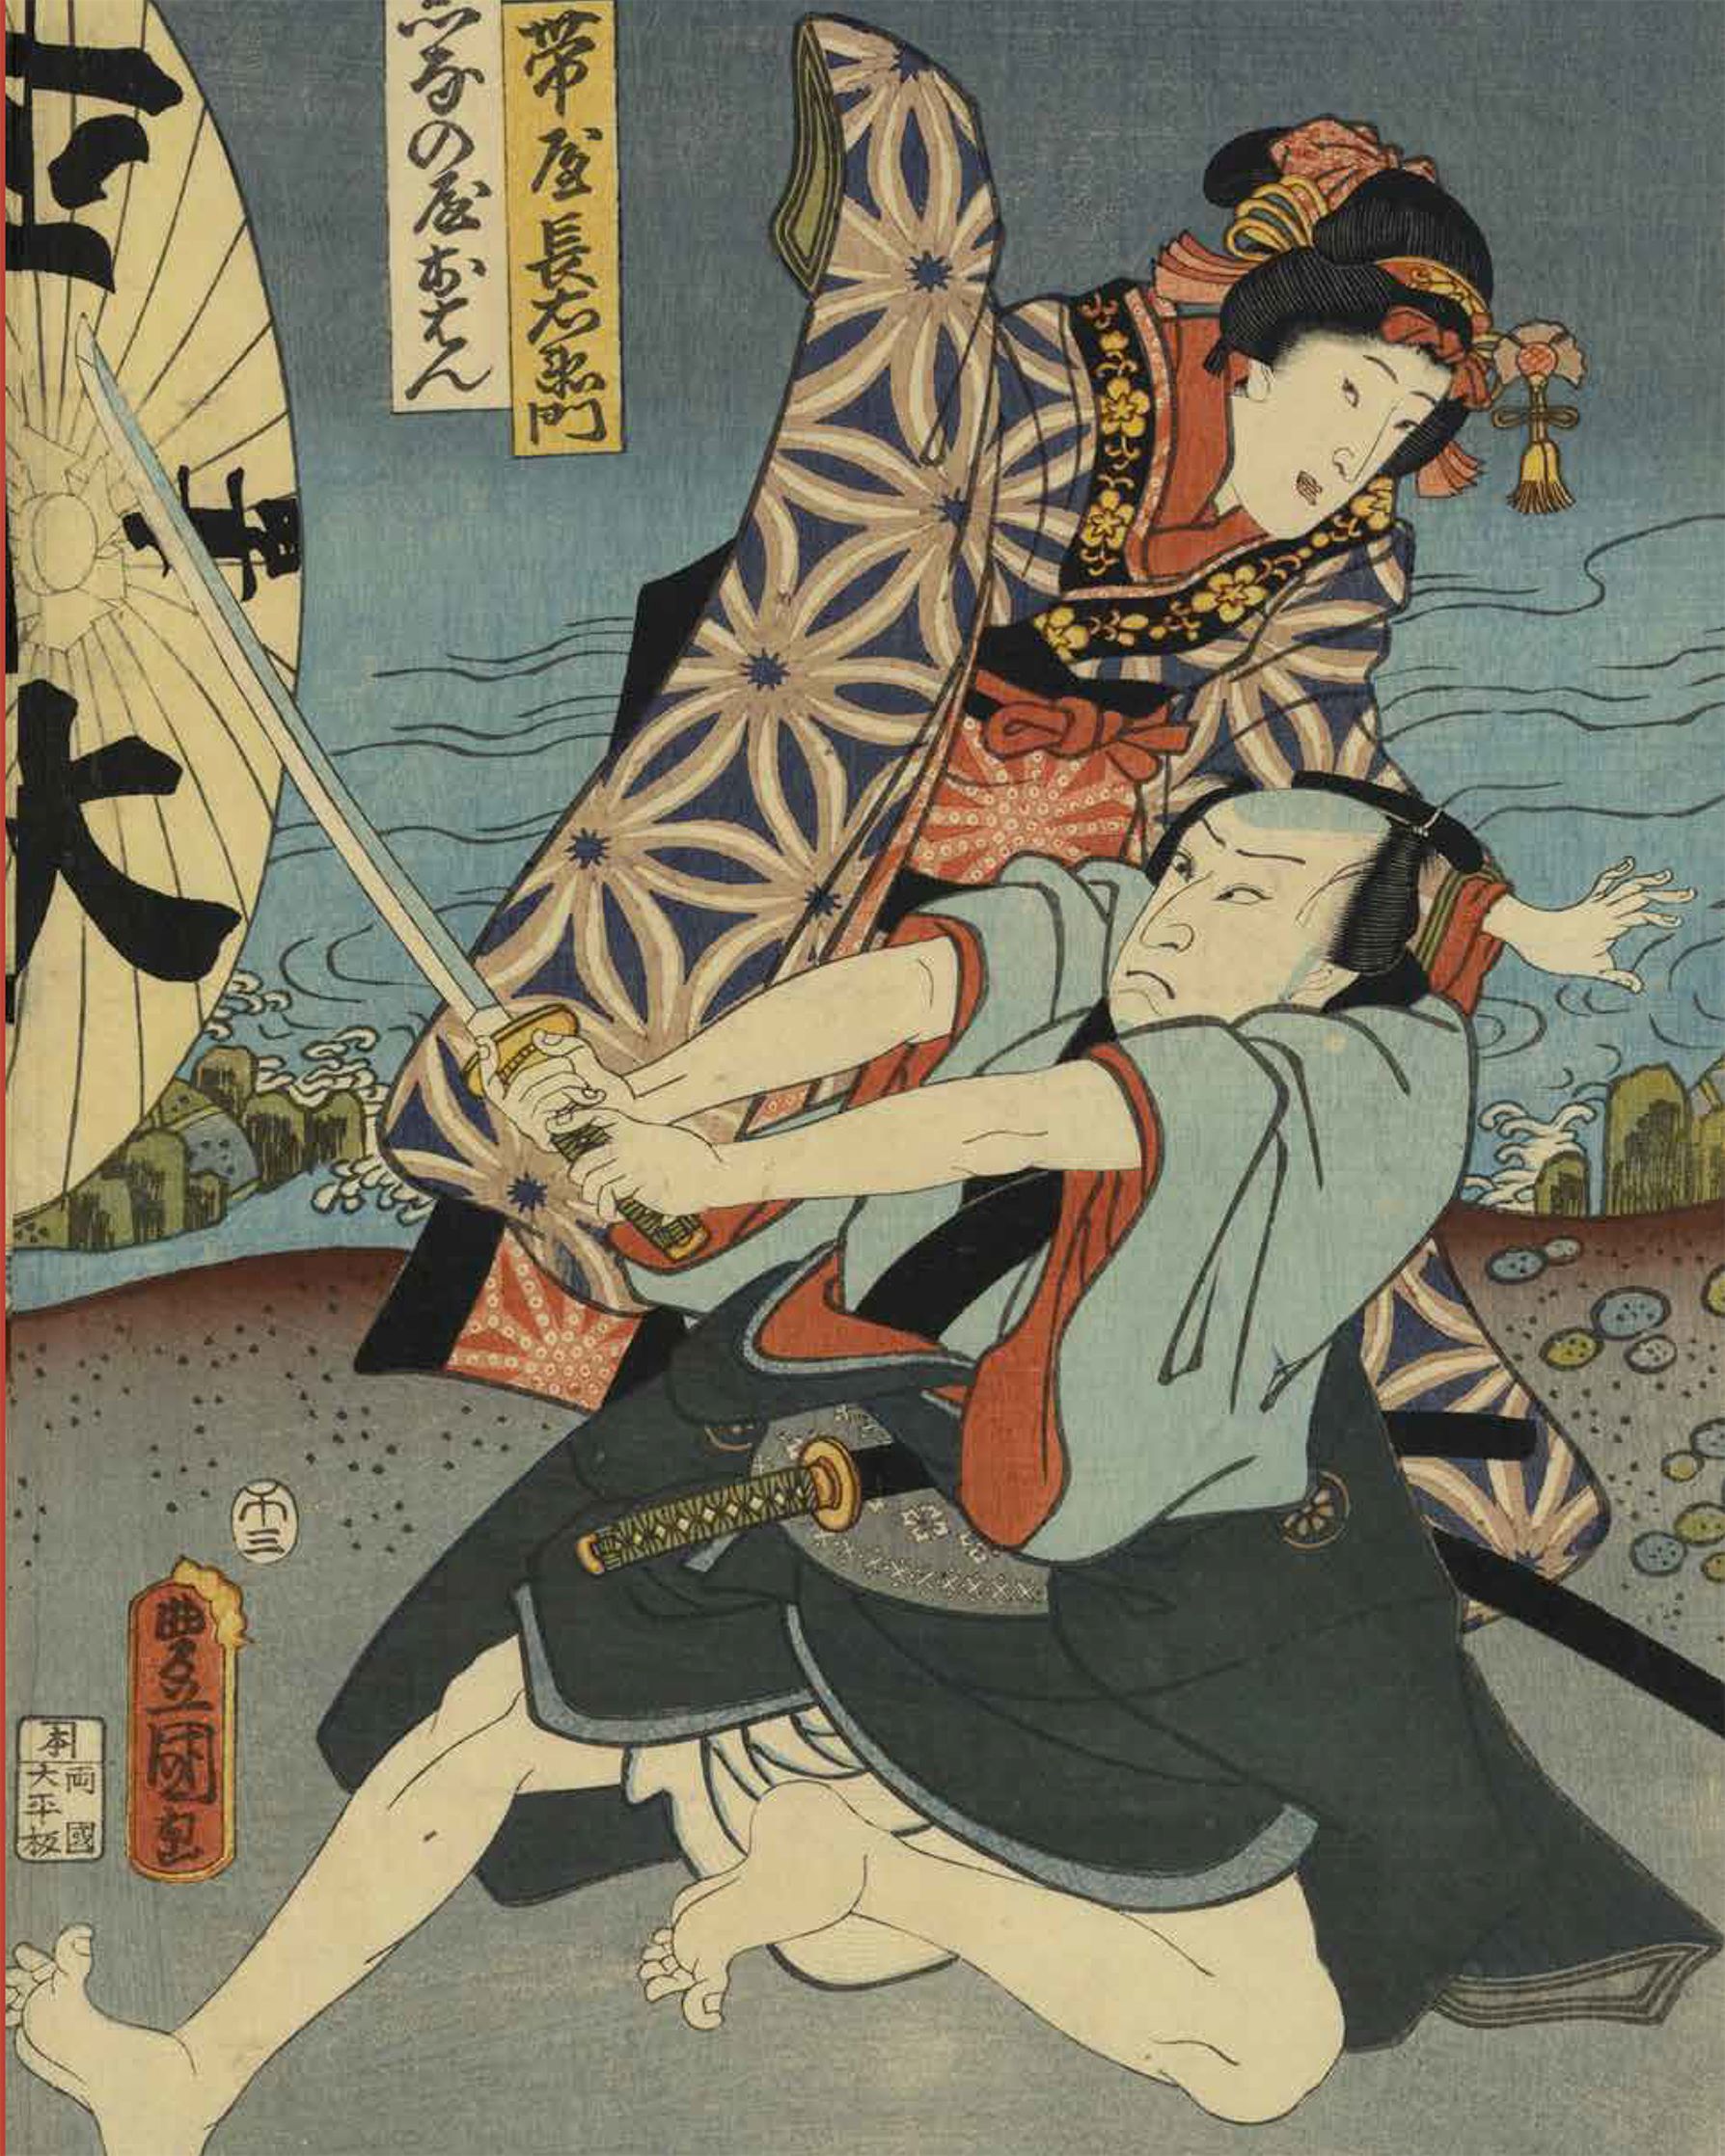 Francesco Paolo Campione, Marco Fagioli & Moira Luraschi (a cura di), Utamaro, Hokusai, Hiroshige geishe, samurai e la civiltà del piacere, copertina